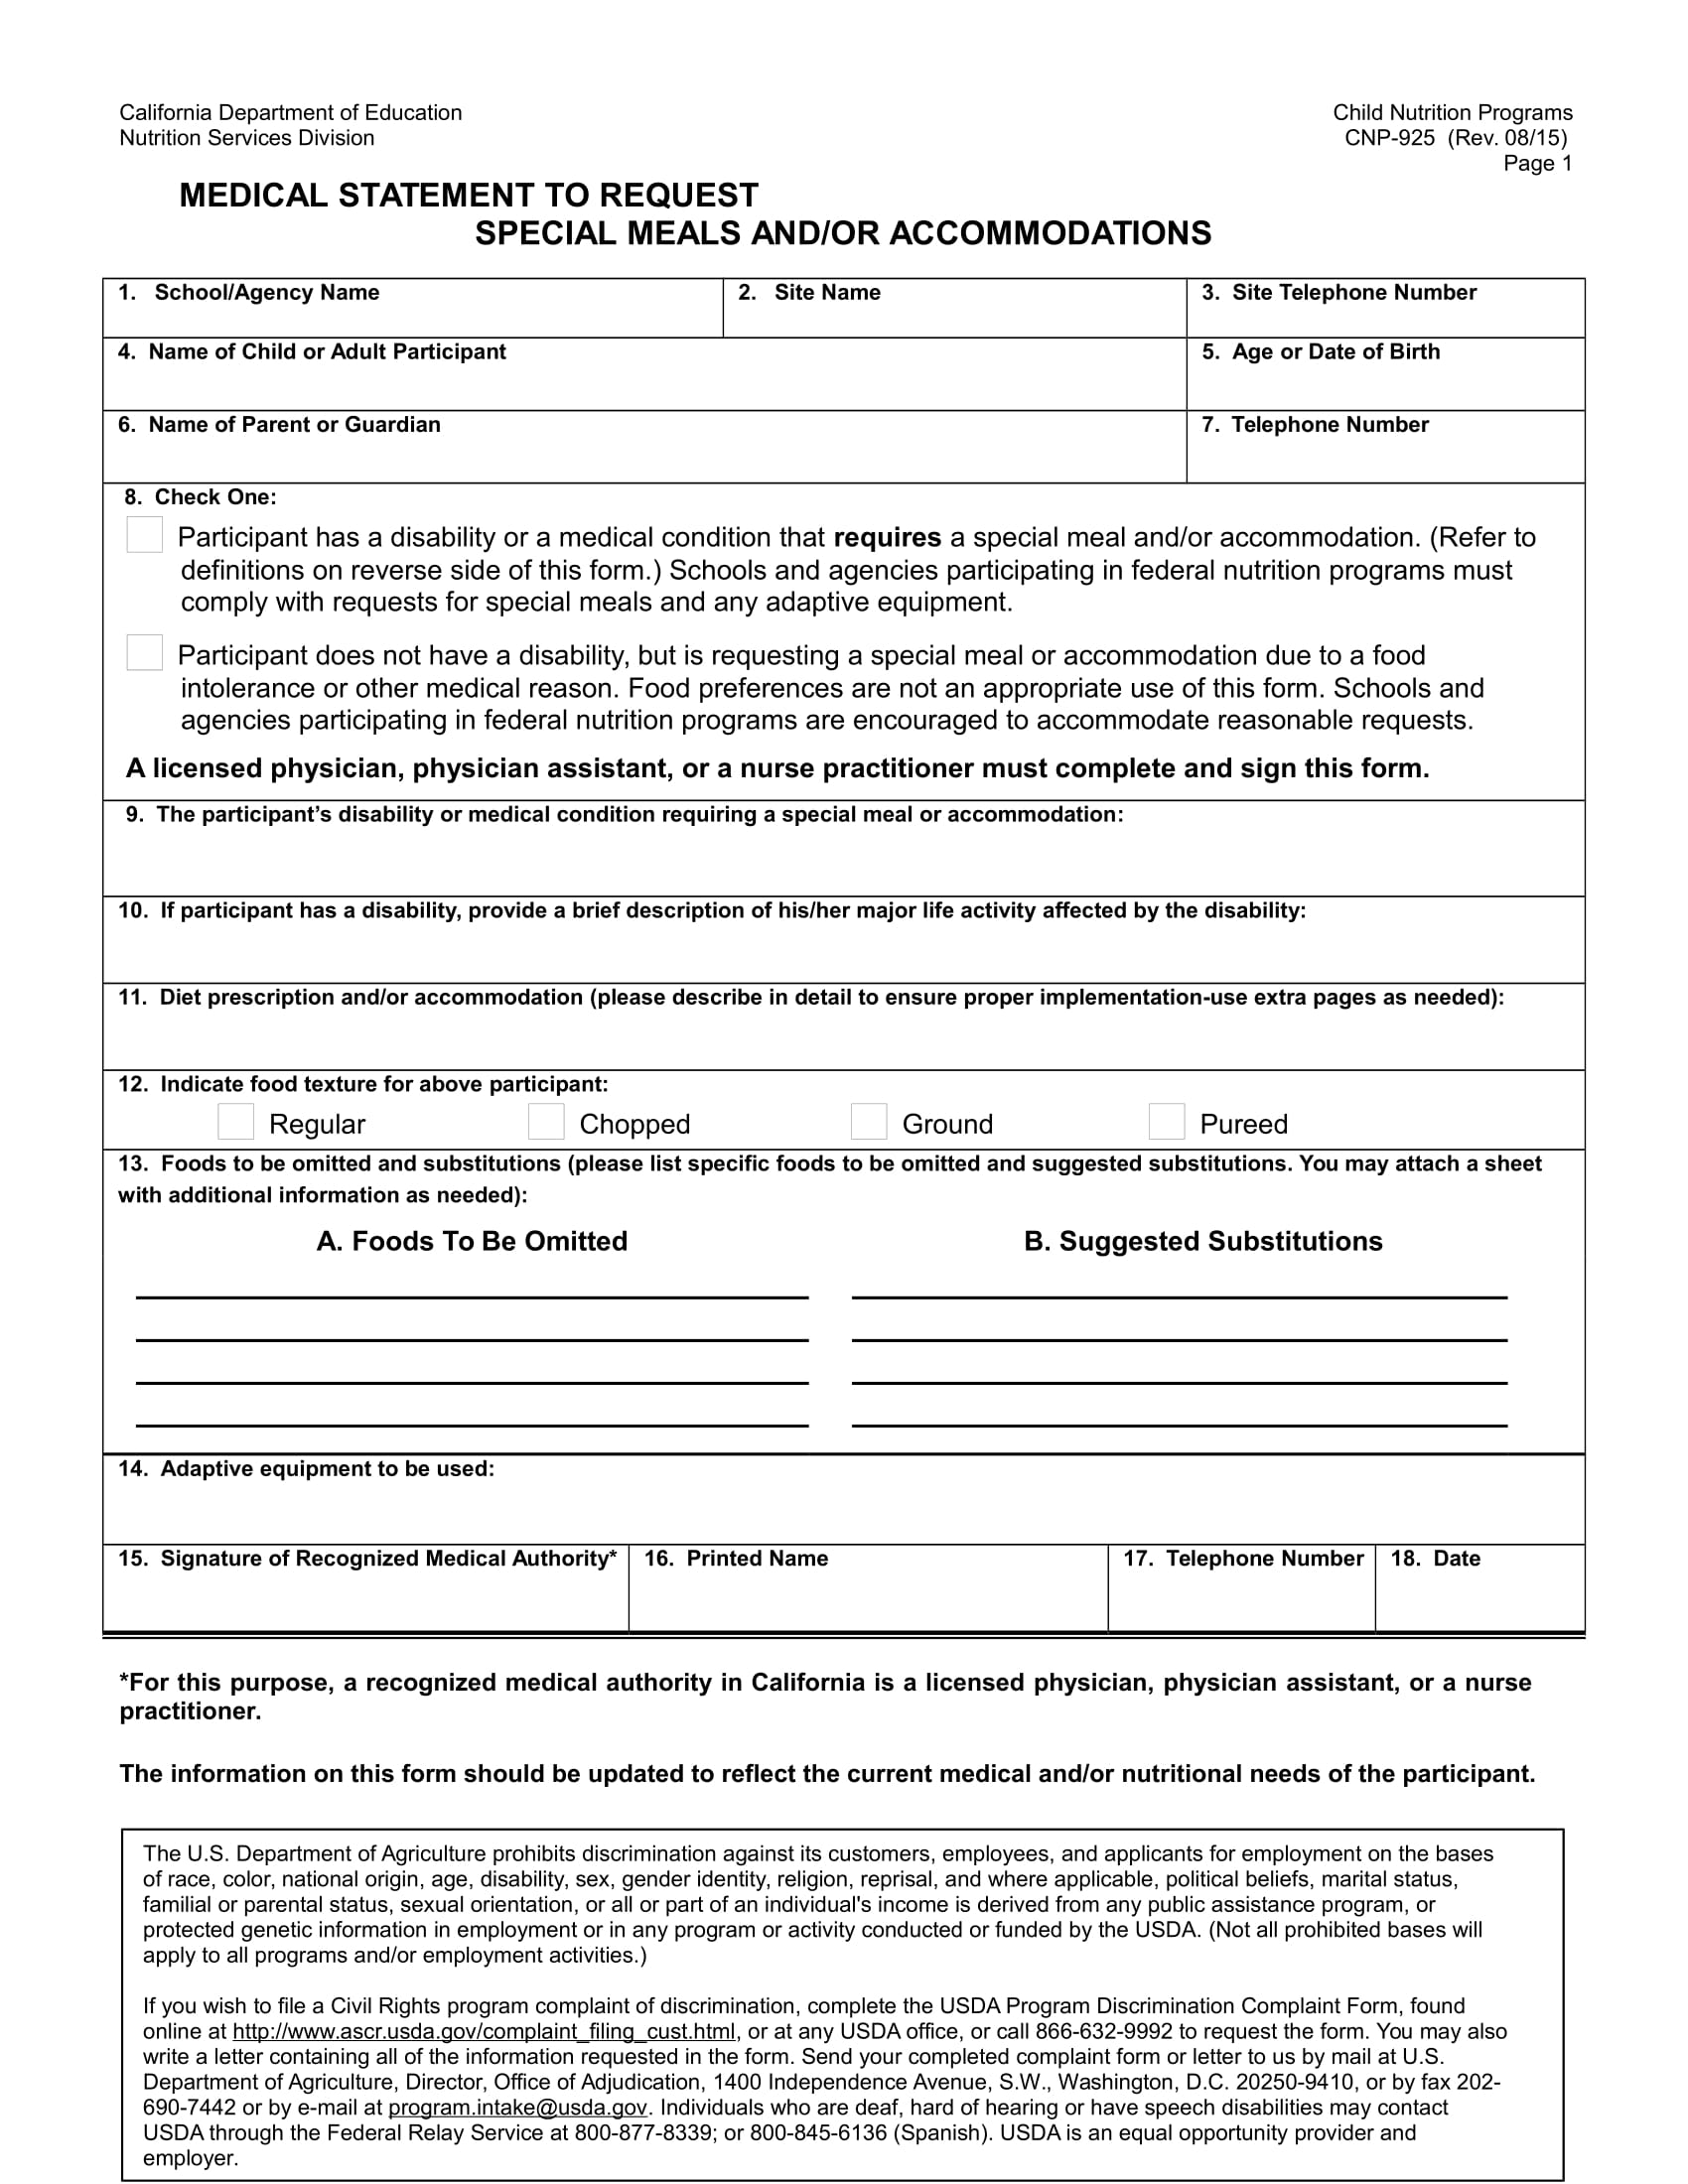 medical statement form sample 1